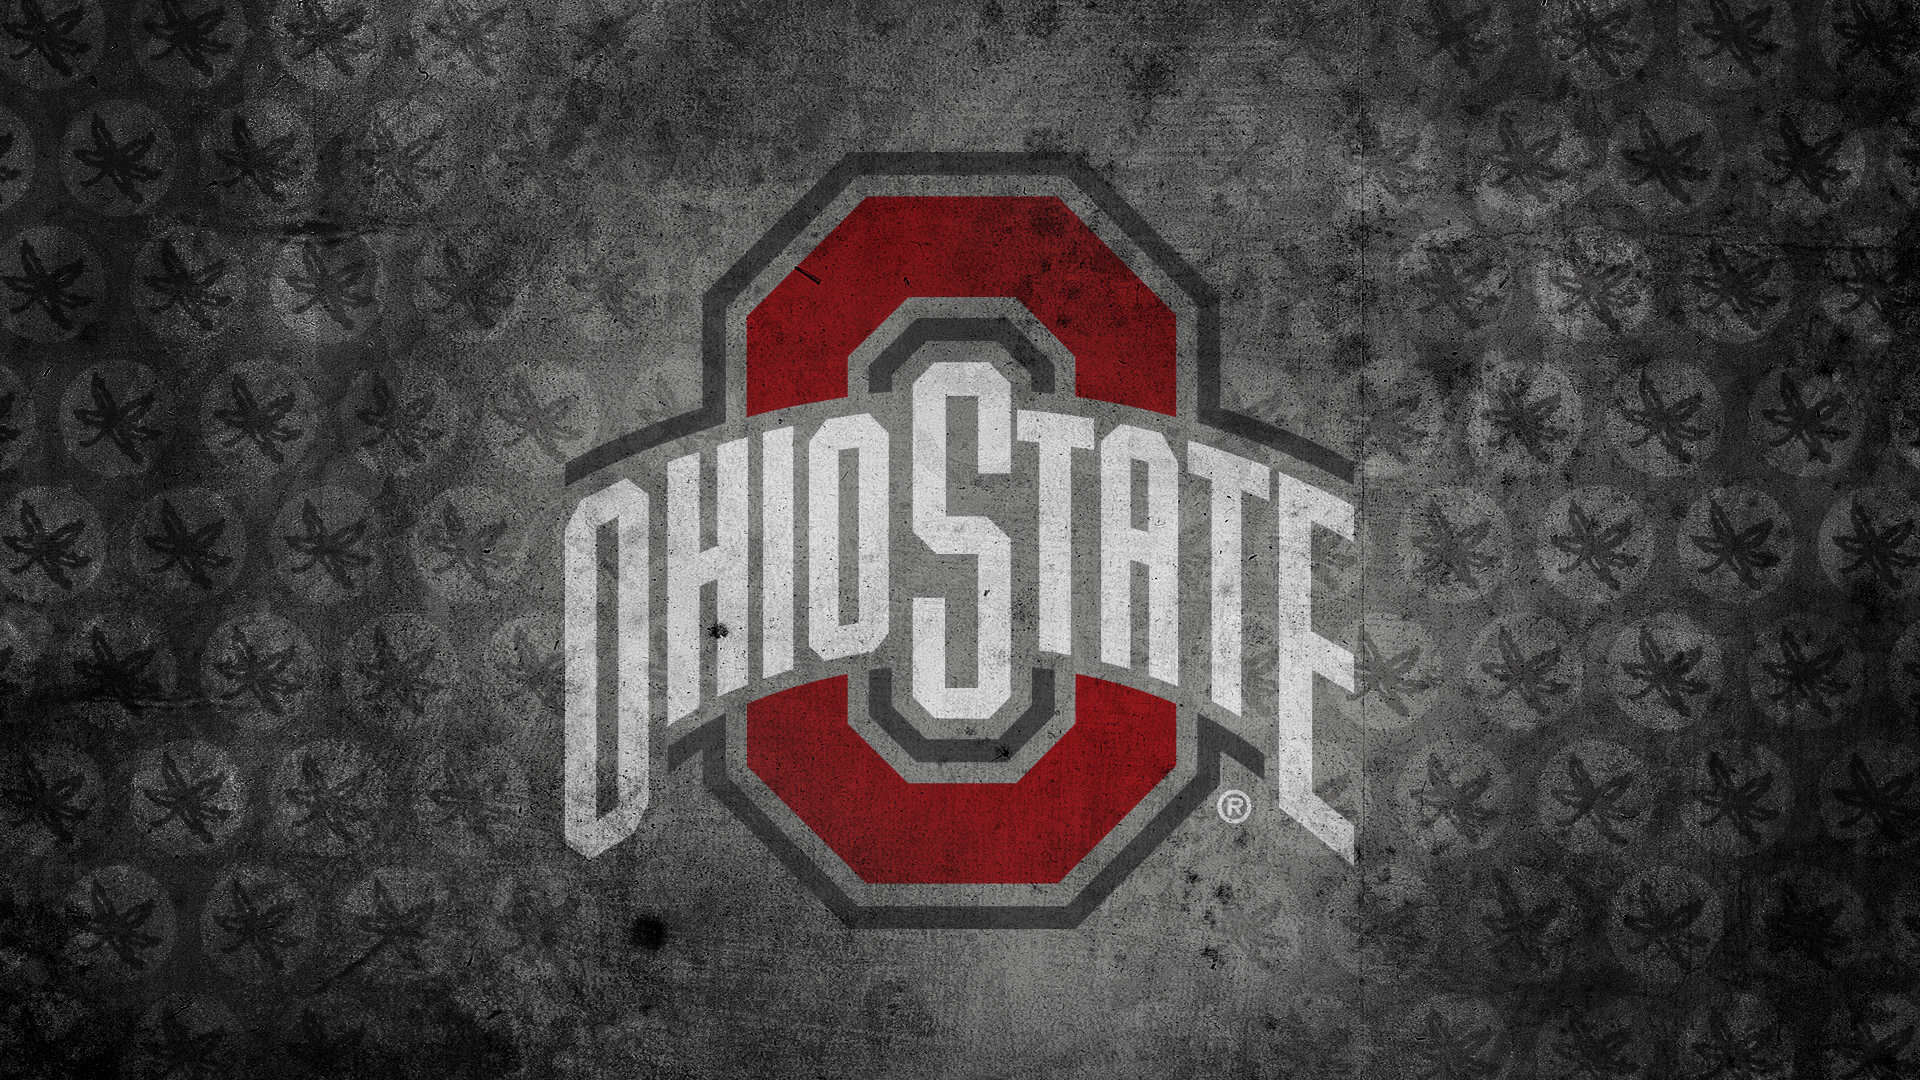 Ohio State Wallpaper 2015 - 1080p